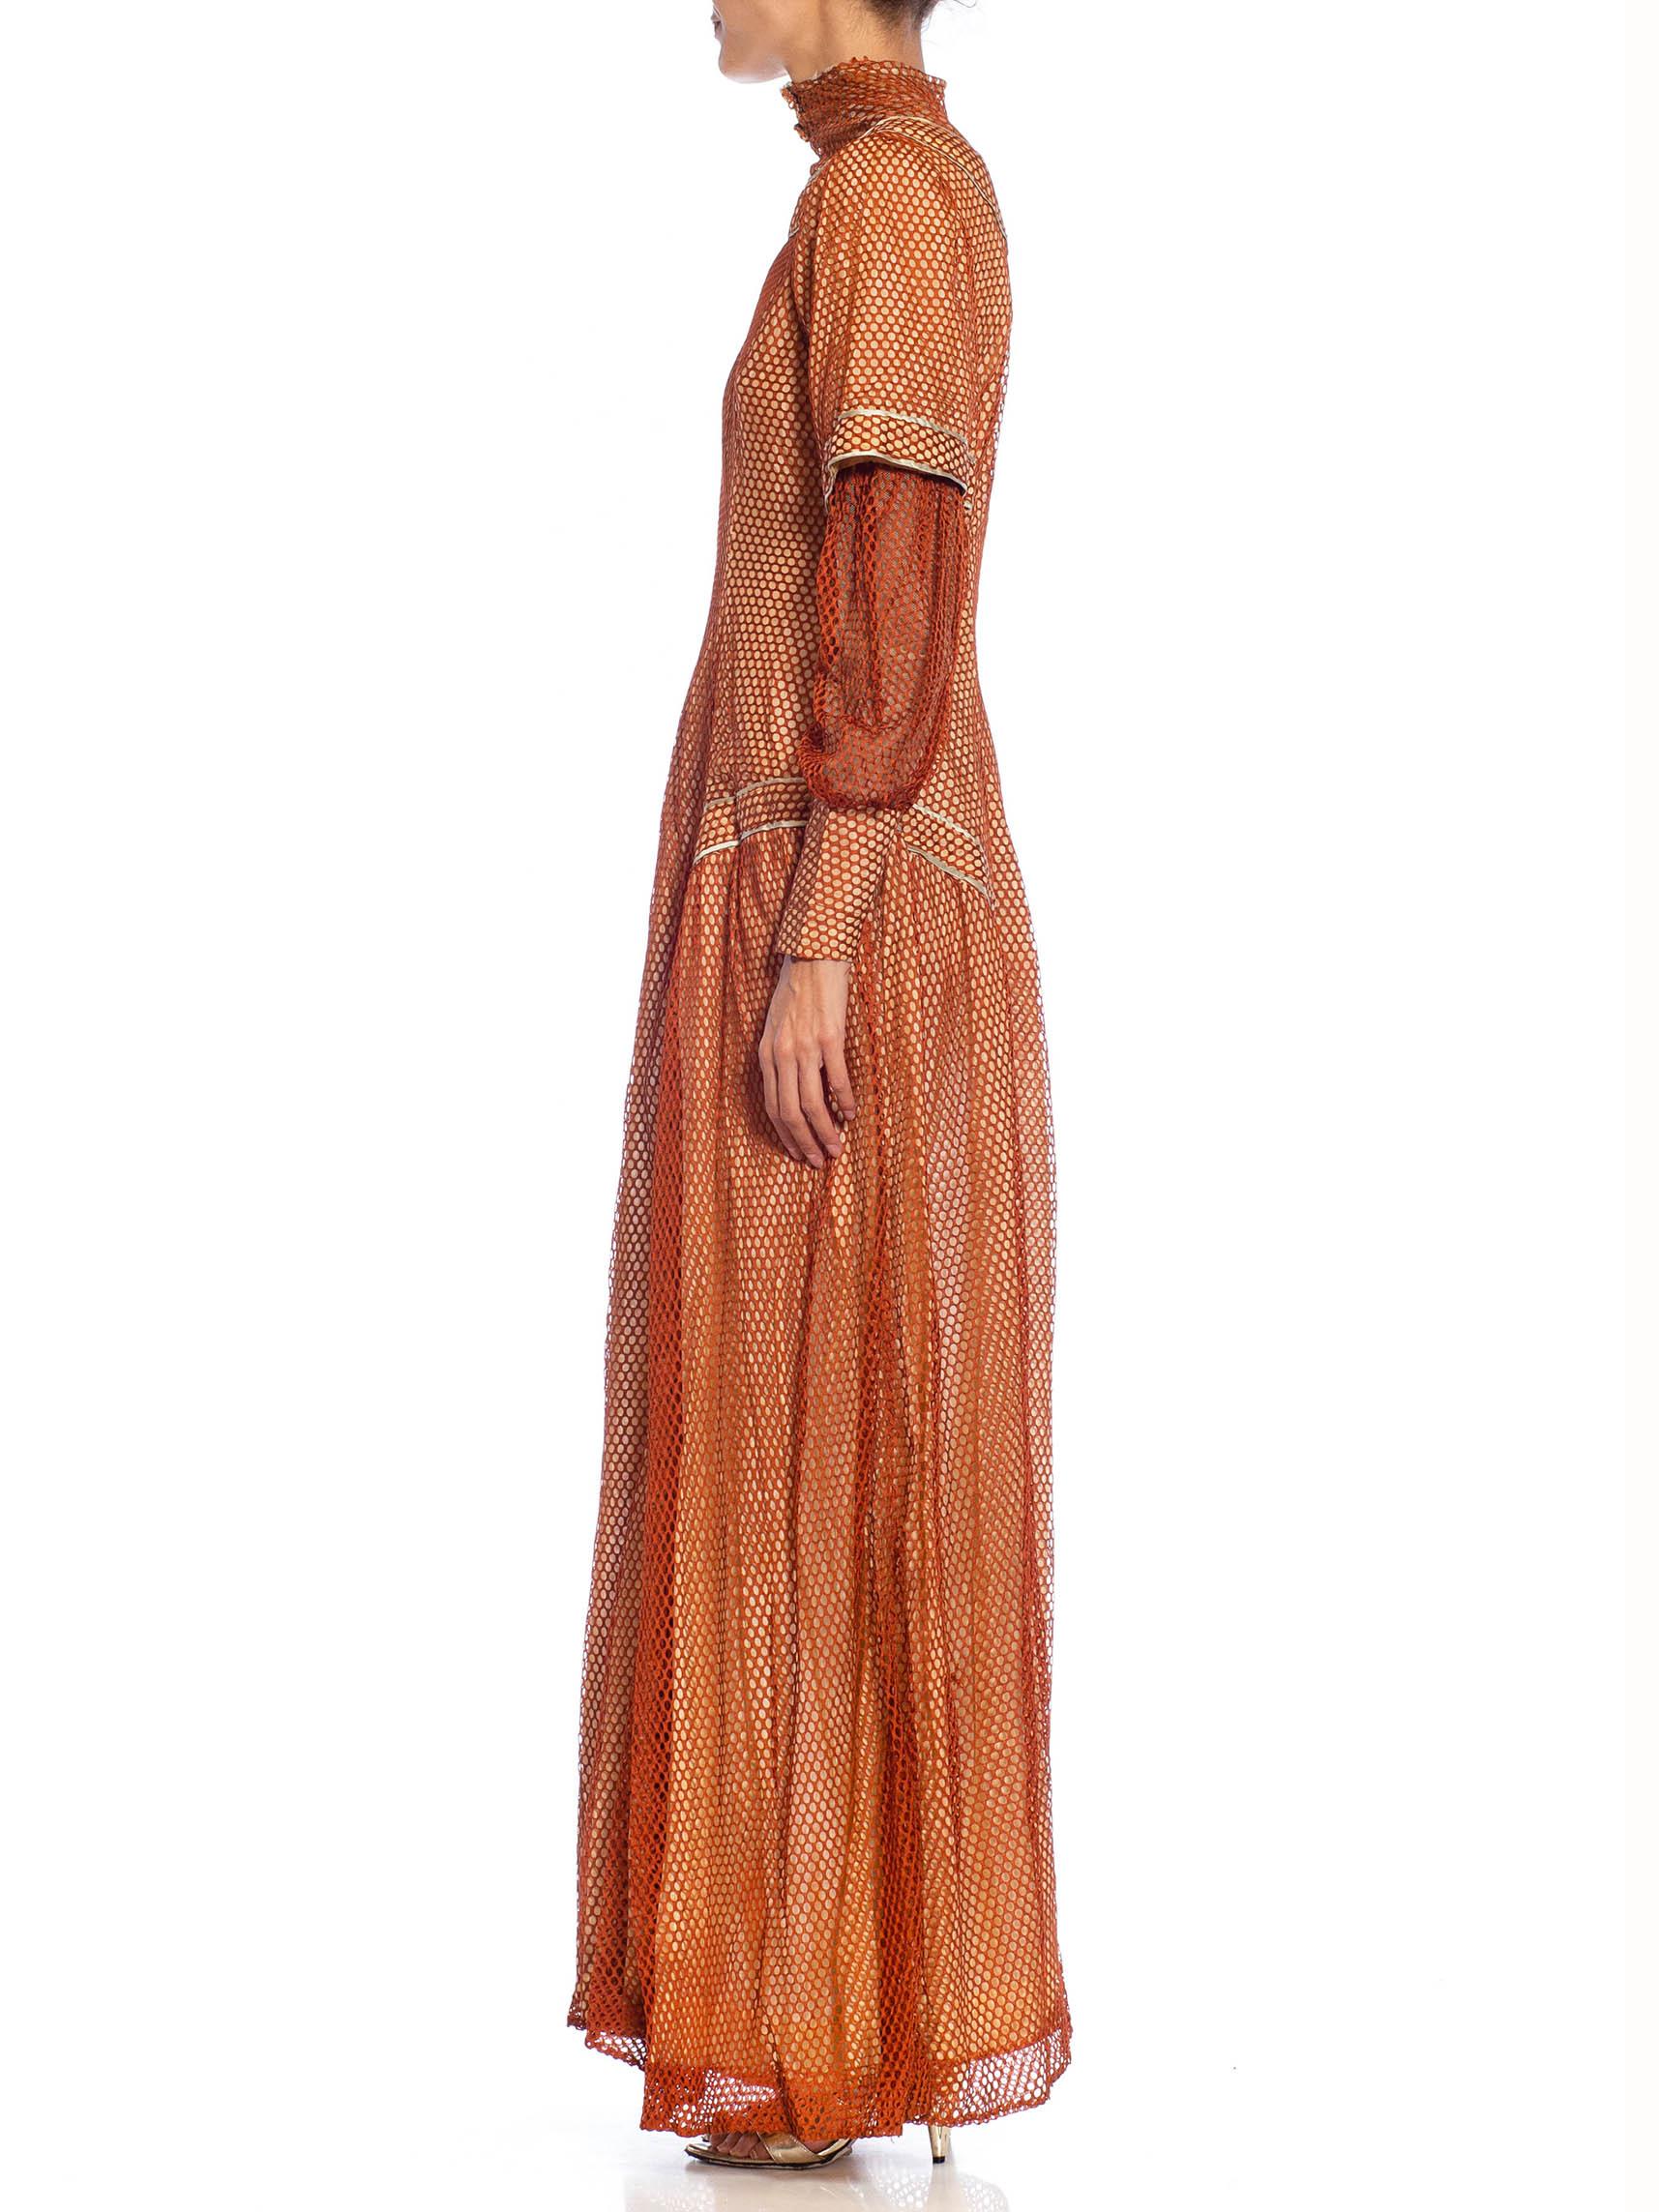 Robe édouardienne en maille de soie bronze sur satin rose pâle à manches longues